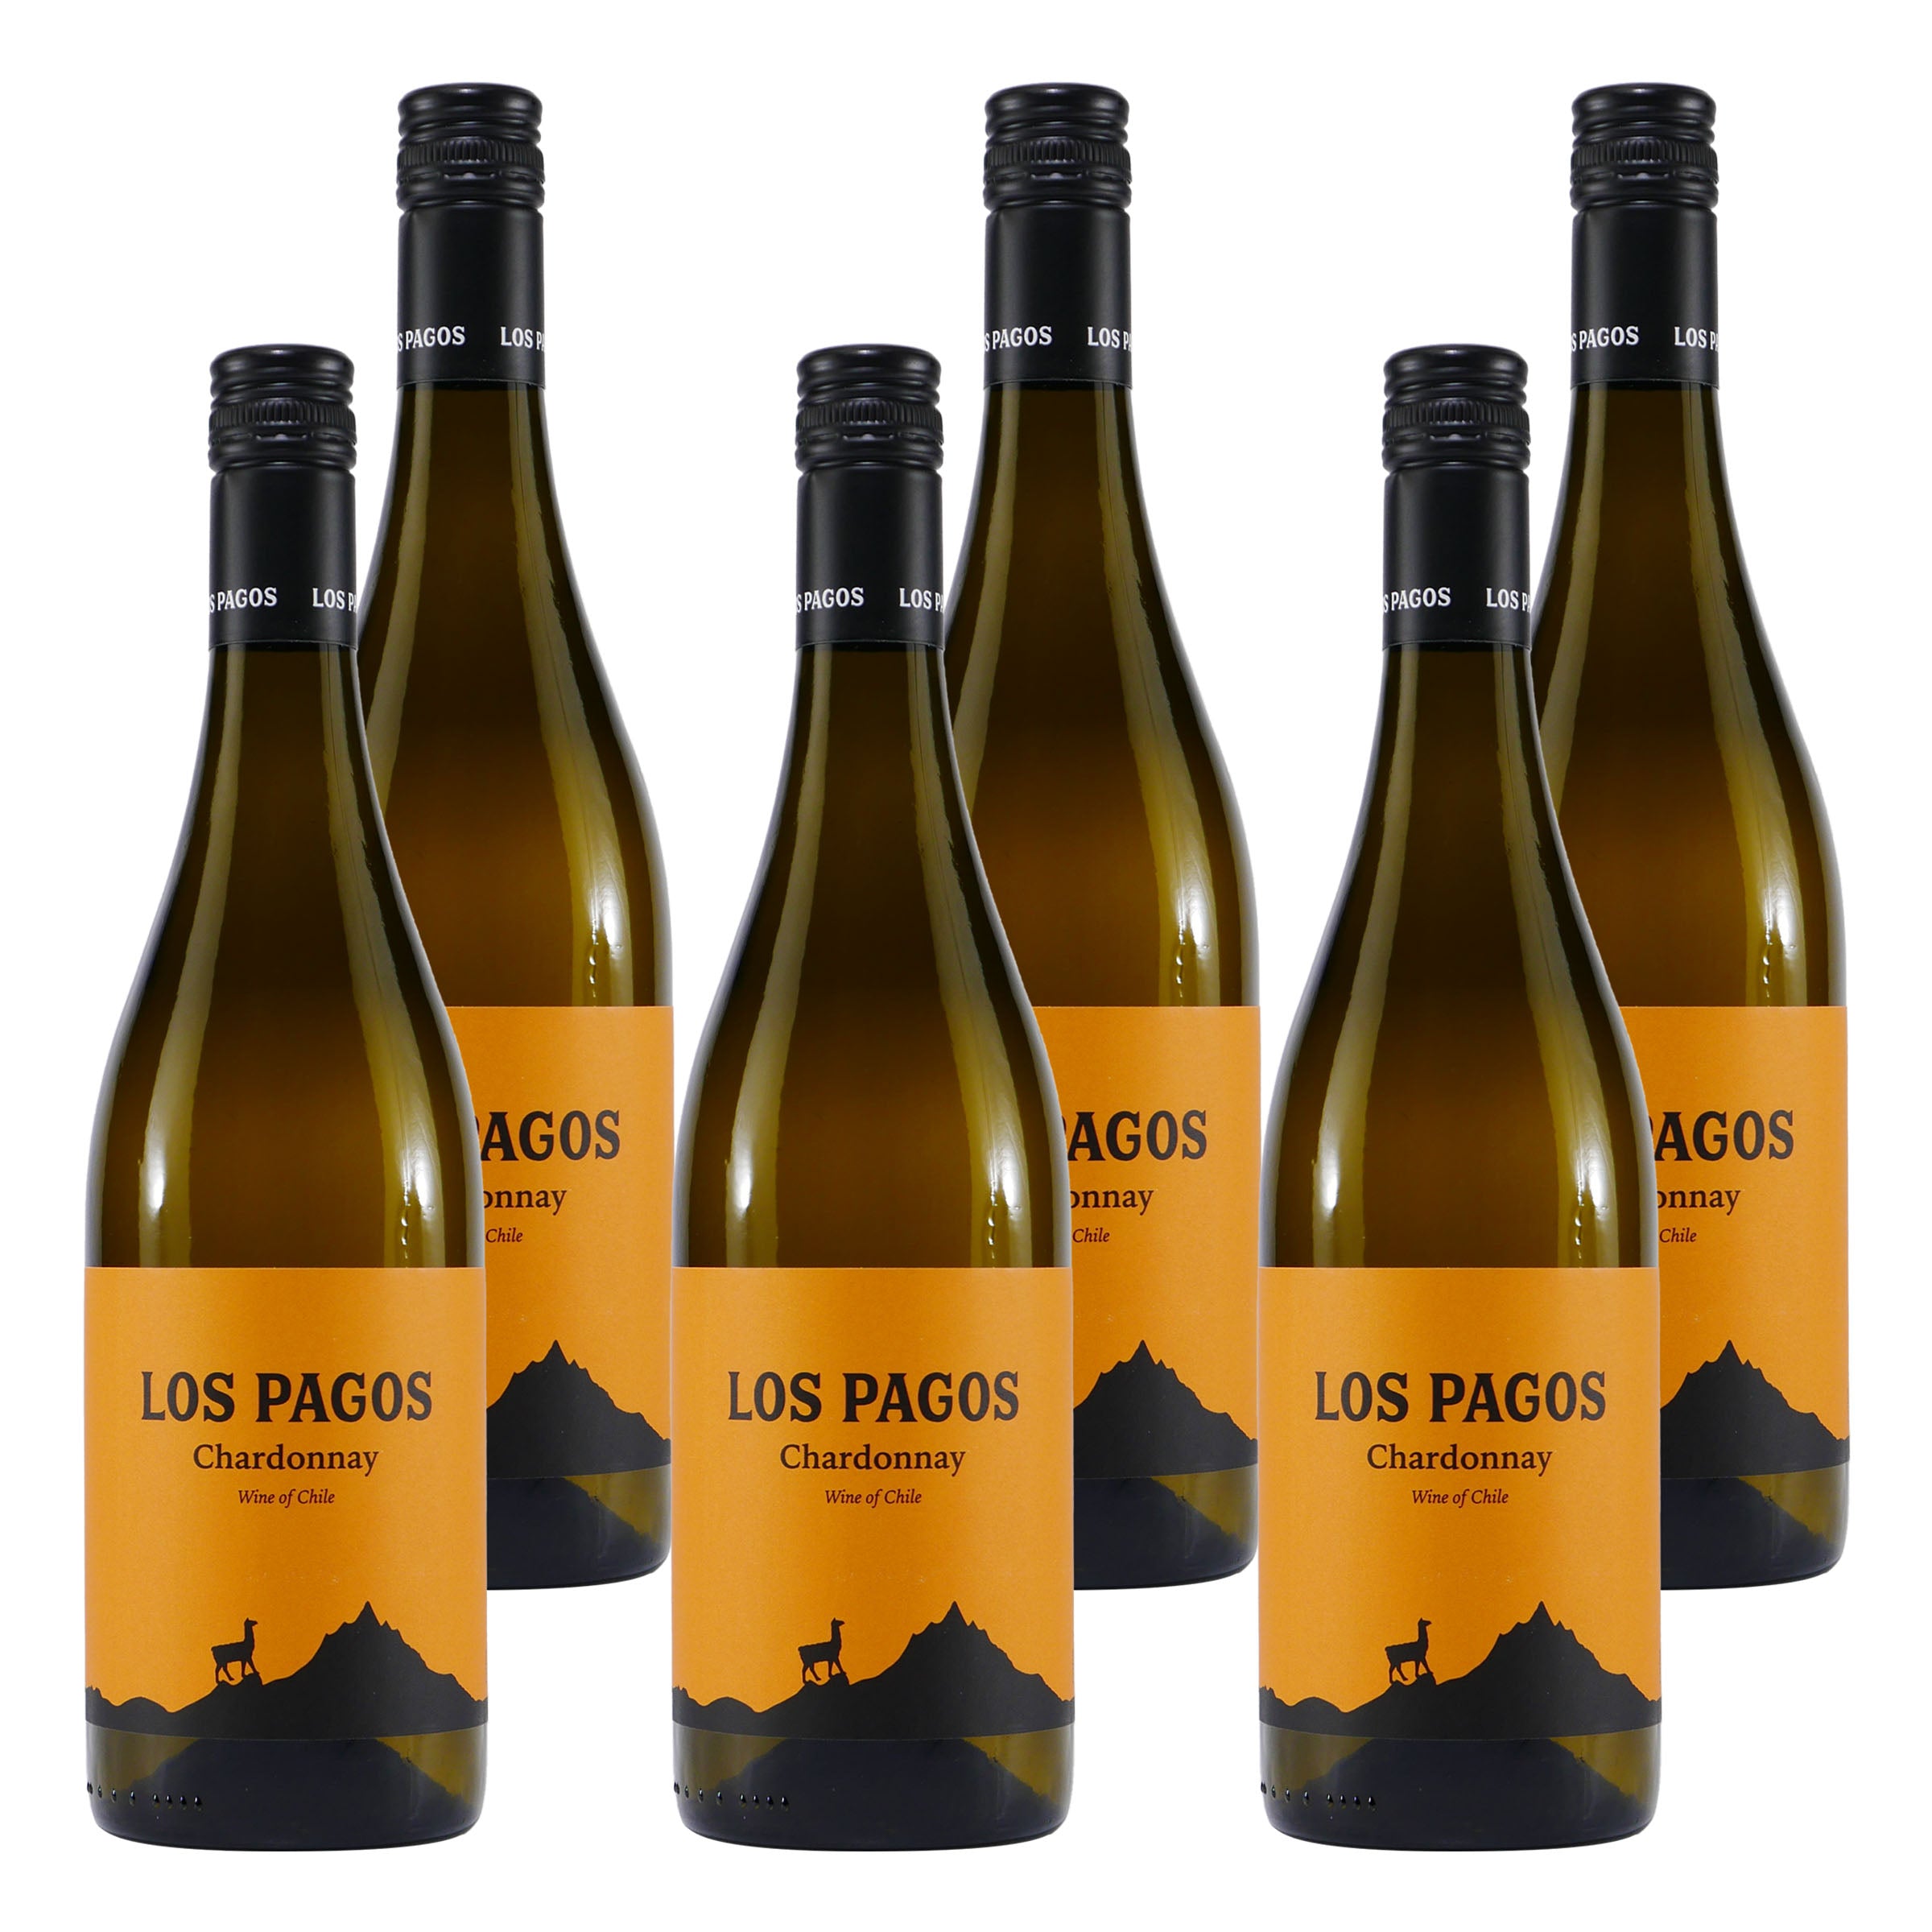 Los Pagos Chardonnay Weißwein -trocken- (6 x 0,75L)